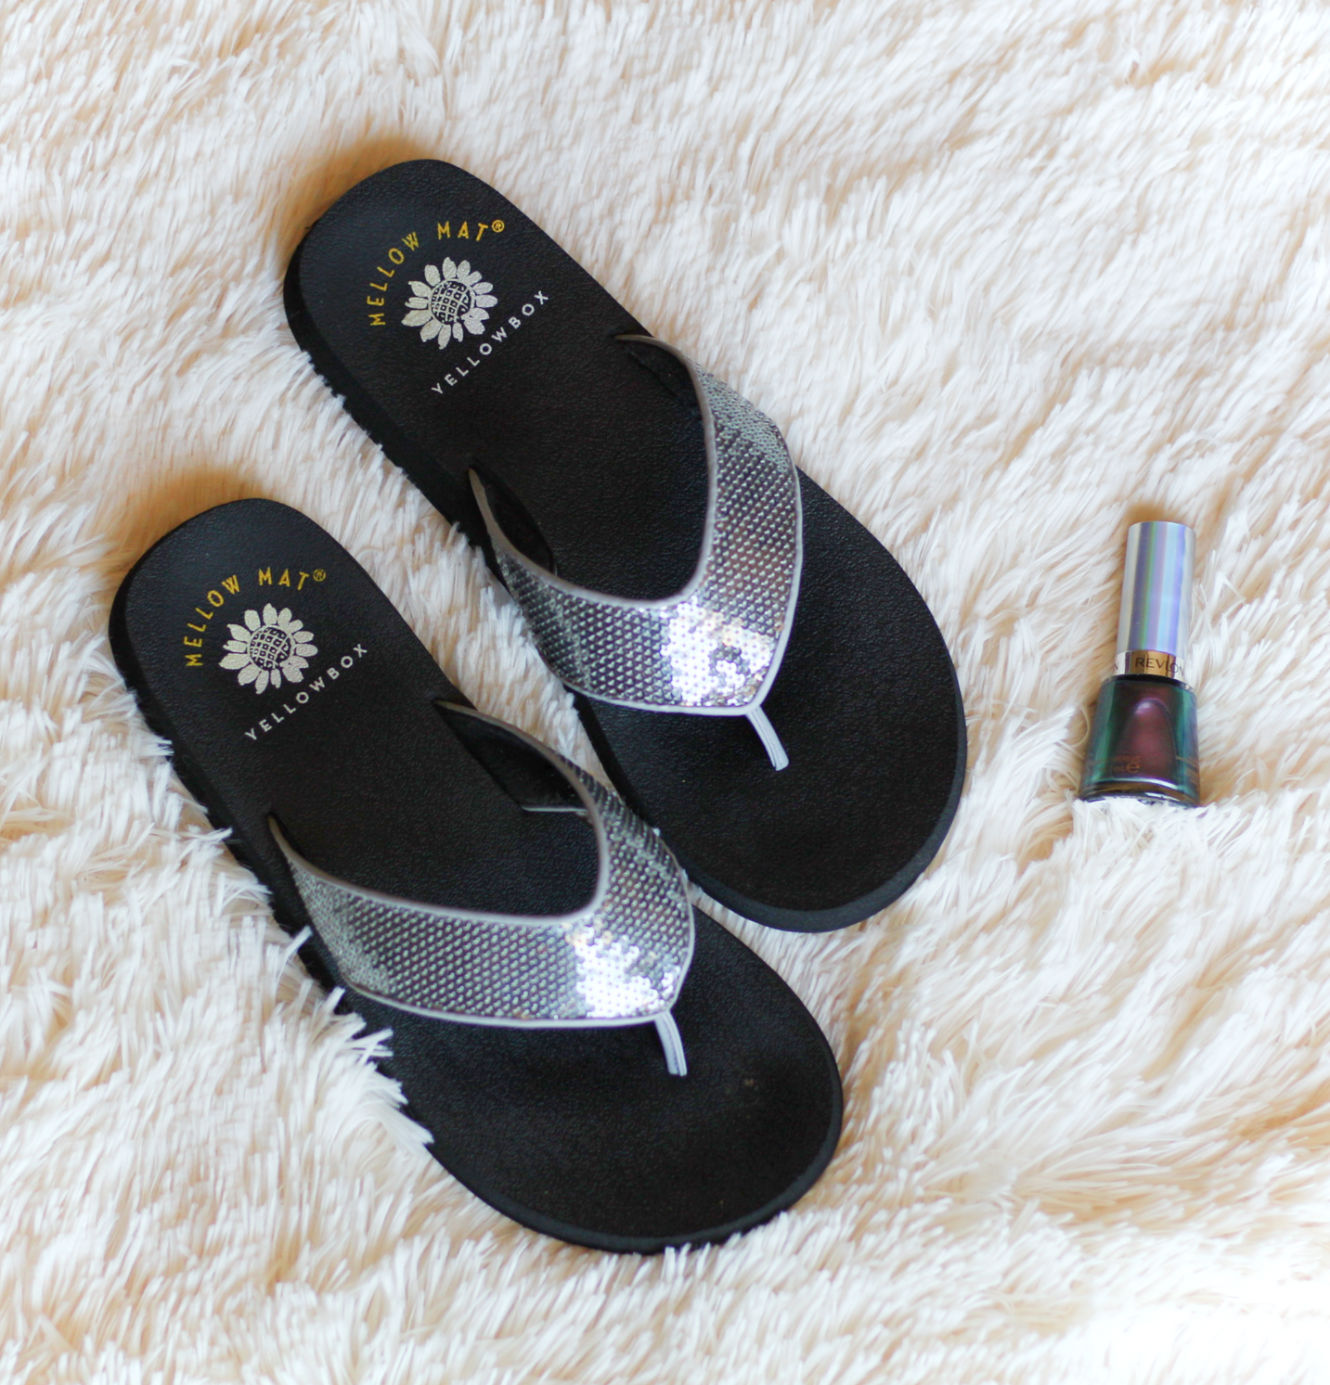 Summer Sandals Plus A Fun New Nail Polish #beauty #sandals #summerfashion